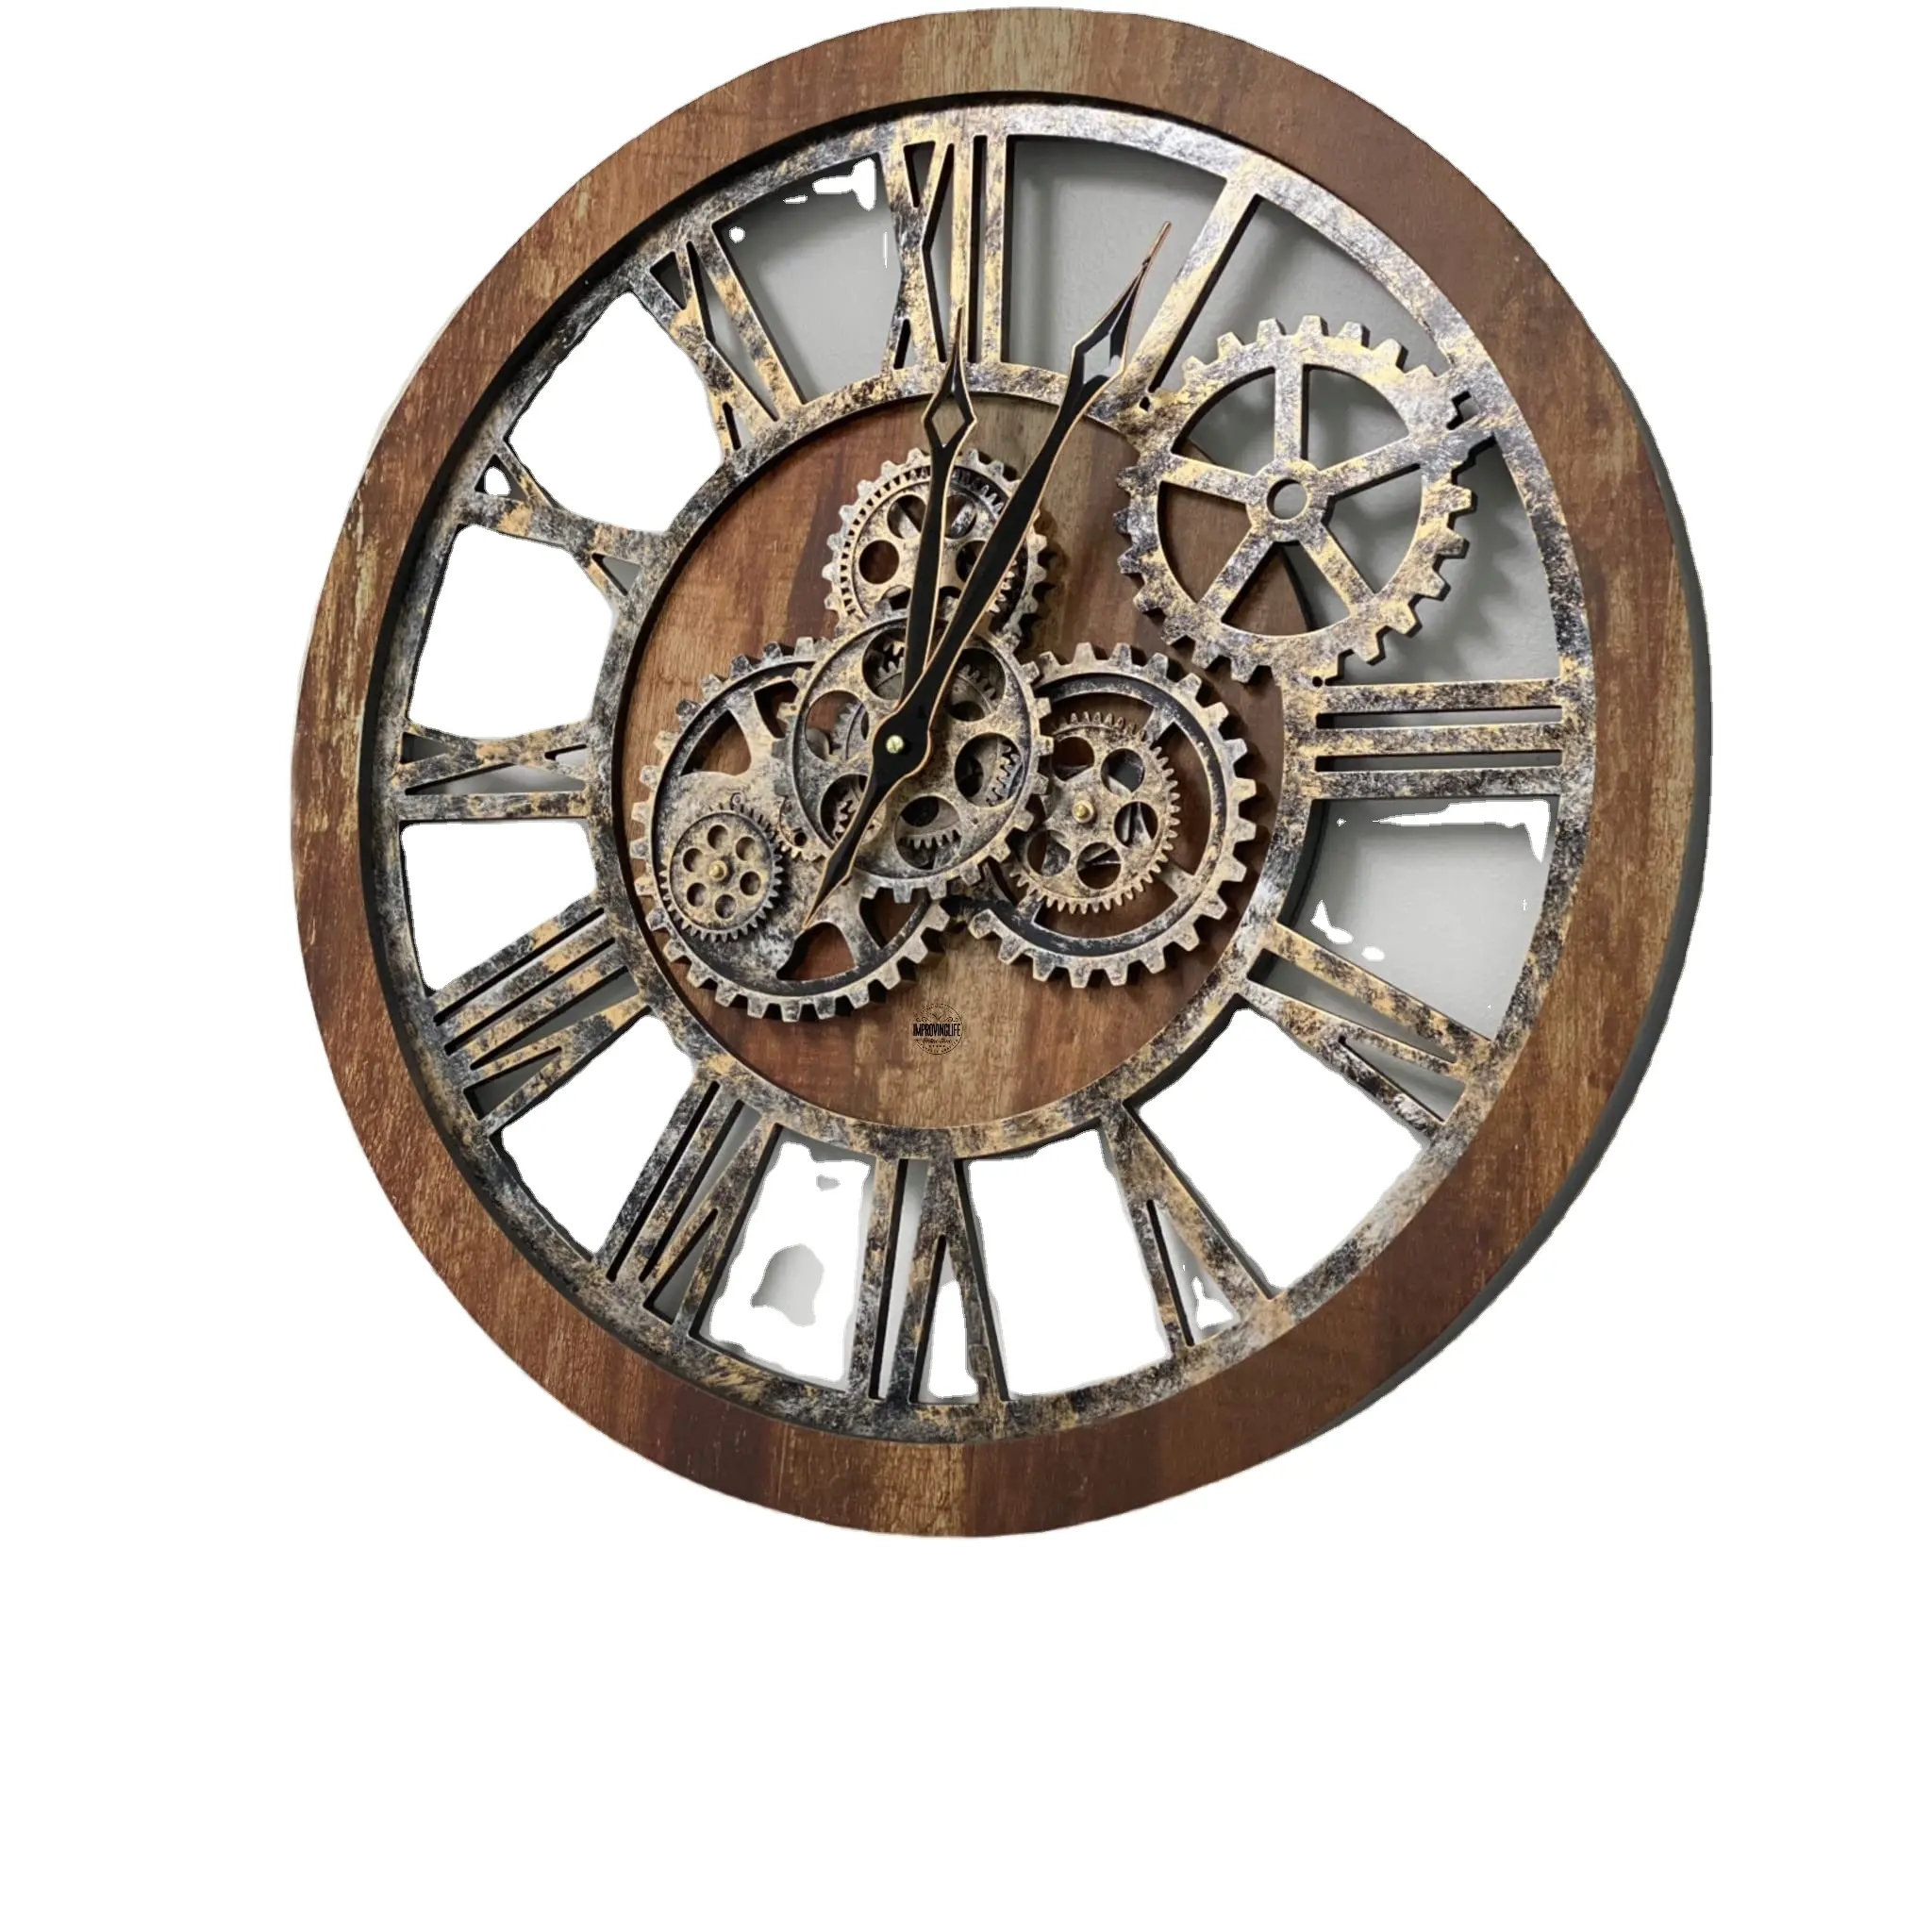 Handmade thủ công bằng gỗ OEM tùy chỉnh di chuyển bánh 3D trang trí nội thất Đồng hồ treo tường đồng hồ hiện đại đồng hồ treo tường